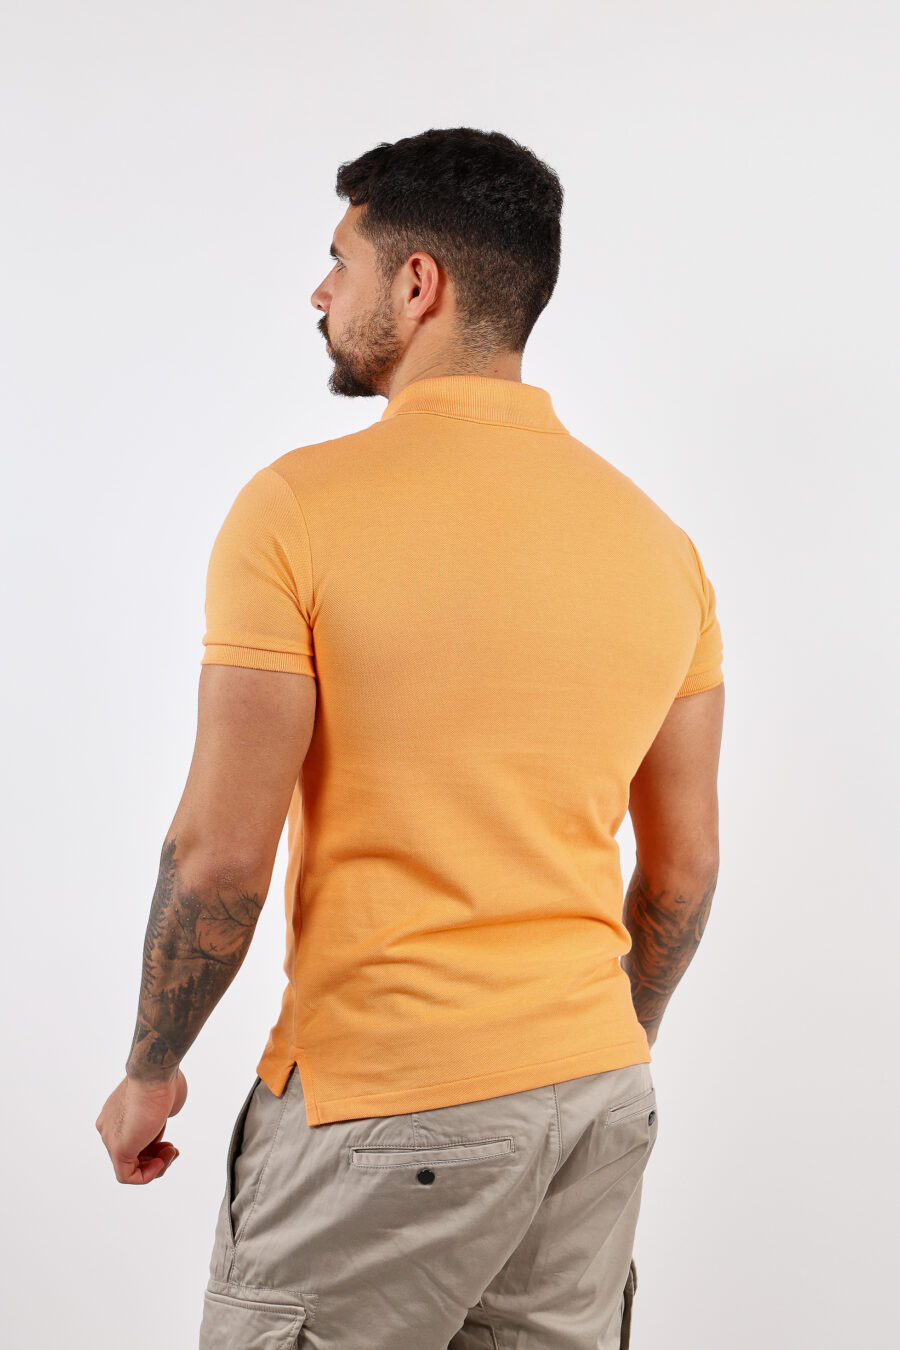 Pólo laranja com mini-logotipo "polo" - BLS Fashion 183